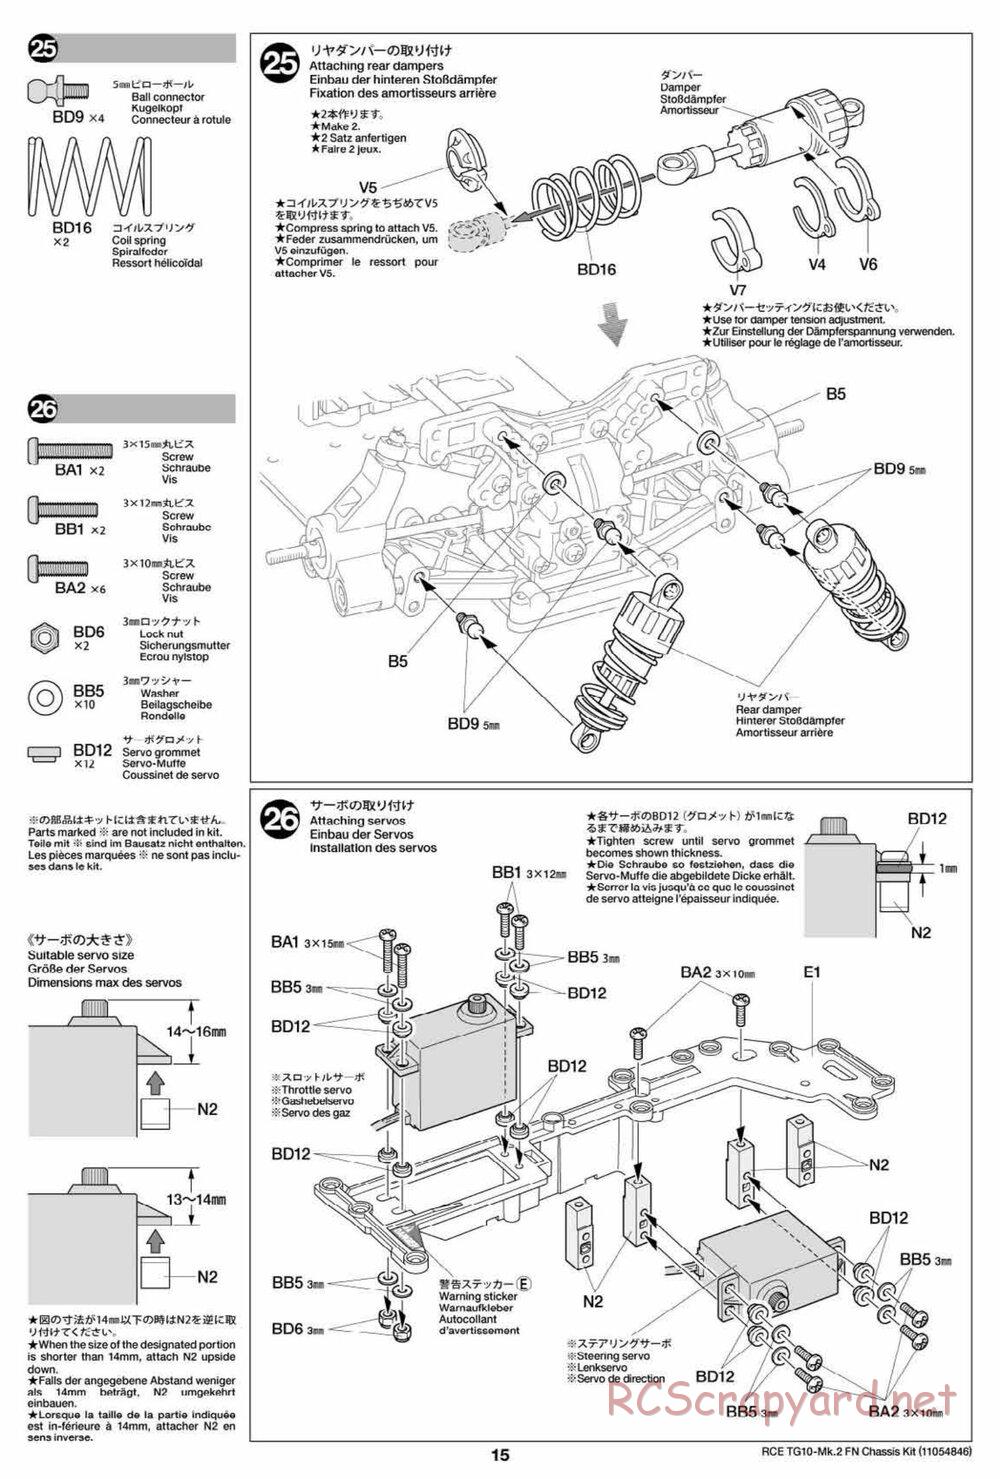 Tamiya - TG10 Mk.2 FN Chassis - Manual - Page 15